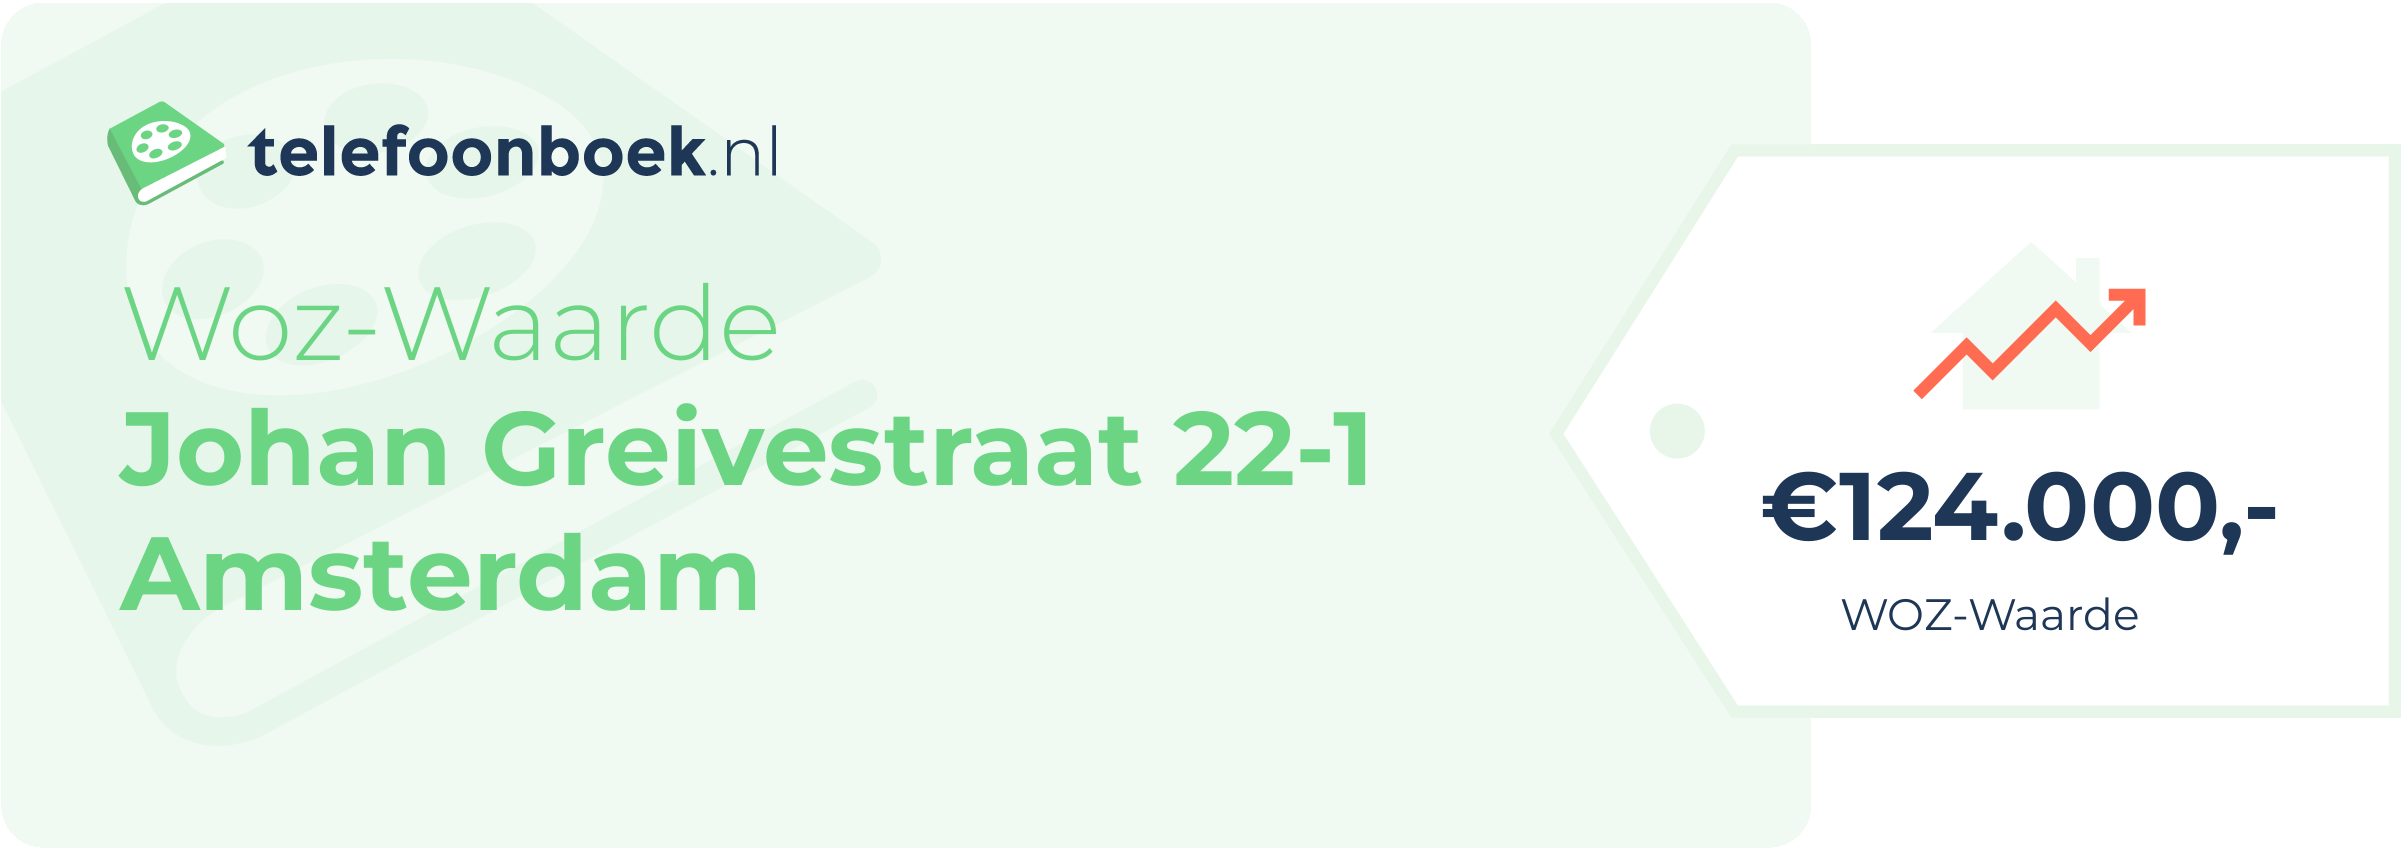 WOZ-waarde Johan Greivestraat 22-1 Amsterdam